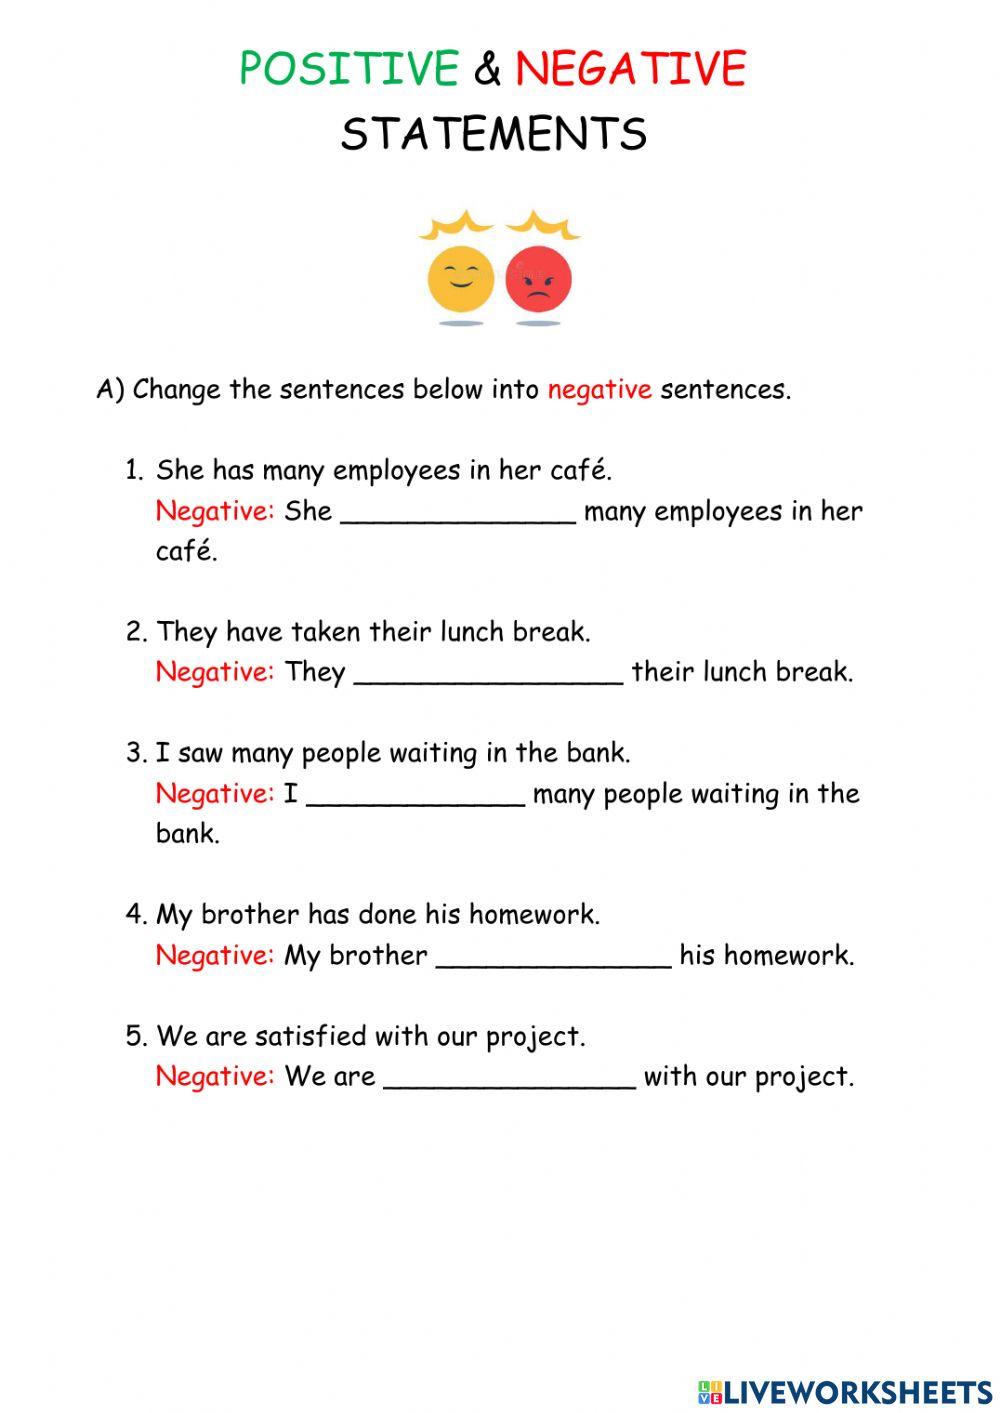 Negative & positive statements worksheet